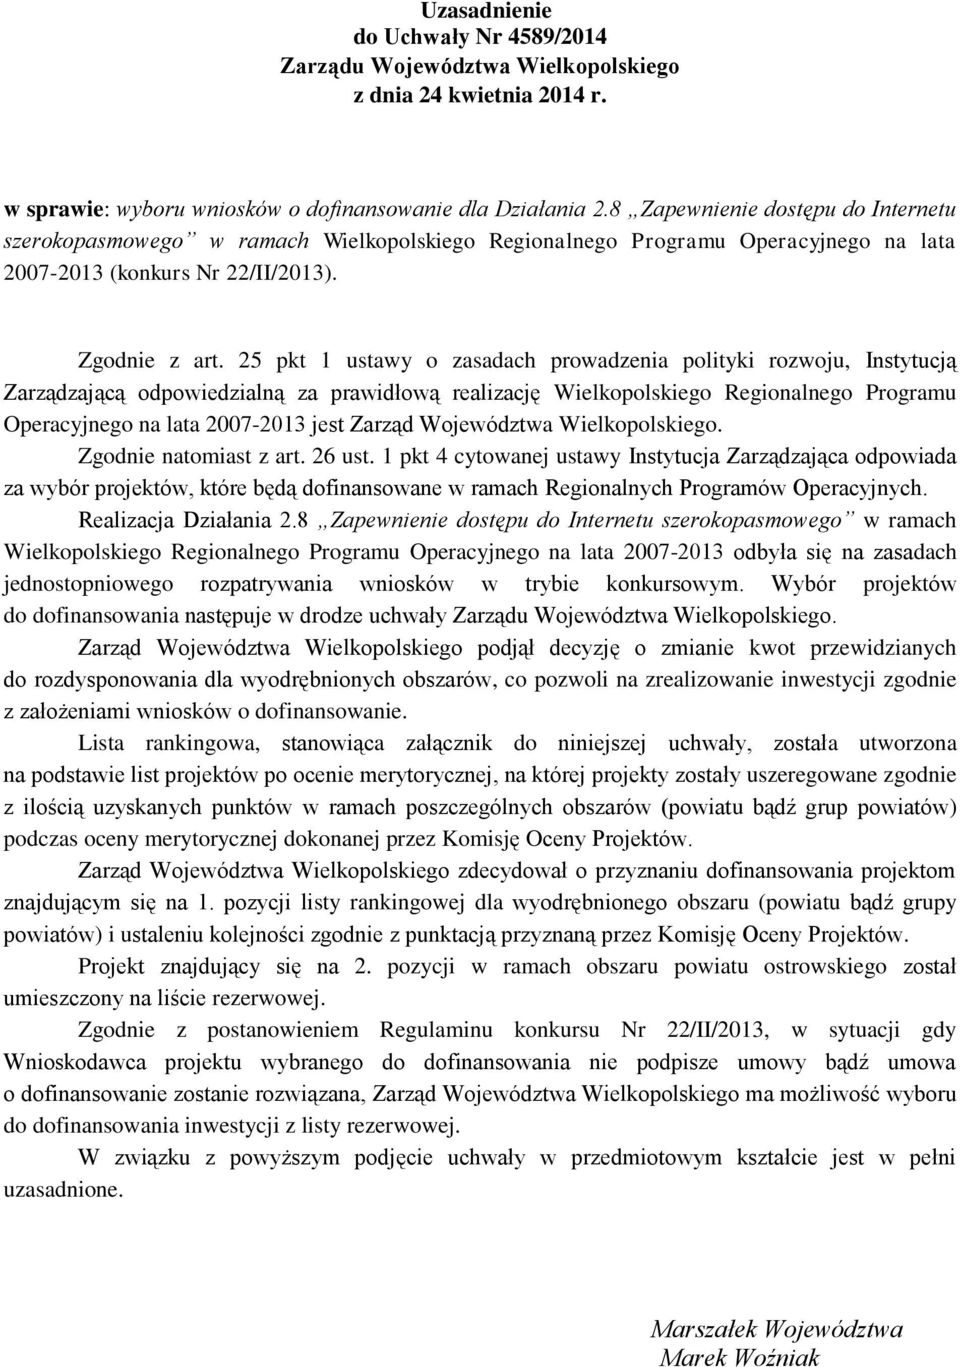 25 pkt 1 ustawy o zasadach prowadzenia polityki rozwoju, Instytucją Zarządzającą odpowiedzialną za prawidłową realizację Wielkopolskiego Regionalnego Programu Operacyjnego na lata 2007-2013 jest